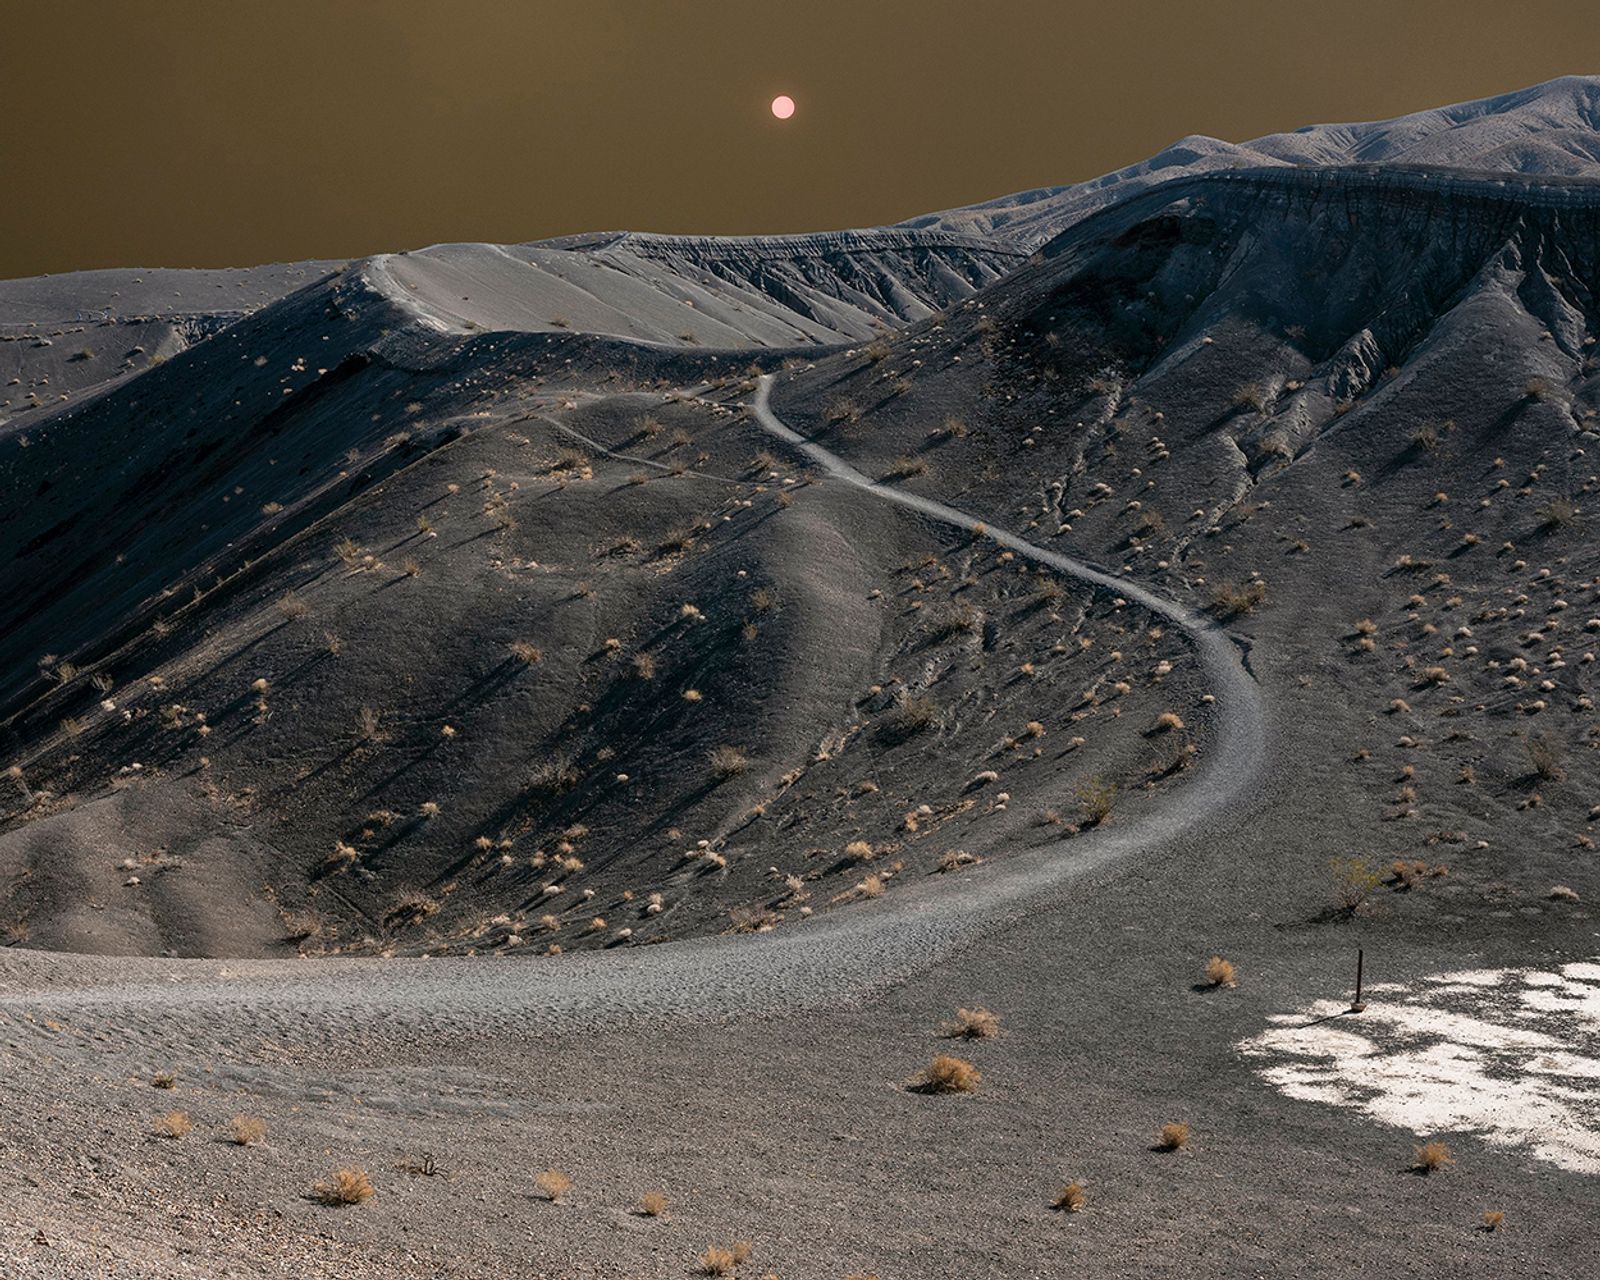 © Antone  Dolezal - Ubehebe Crater, Death Valley, California